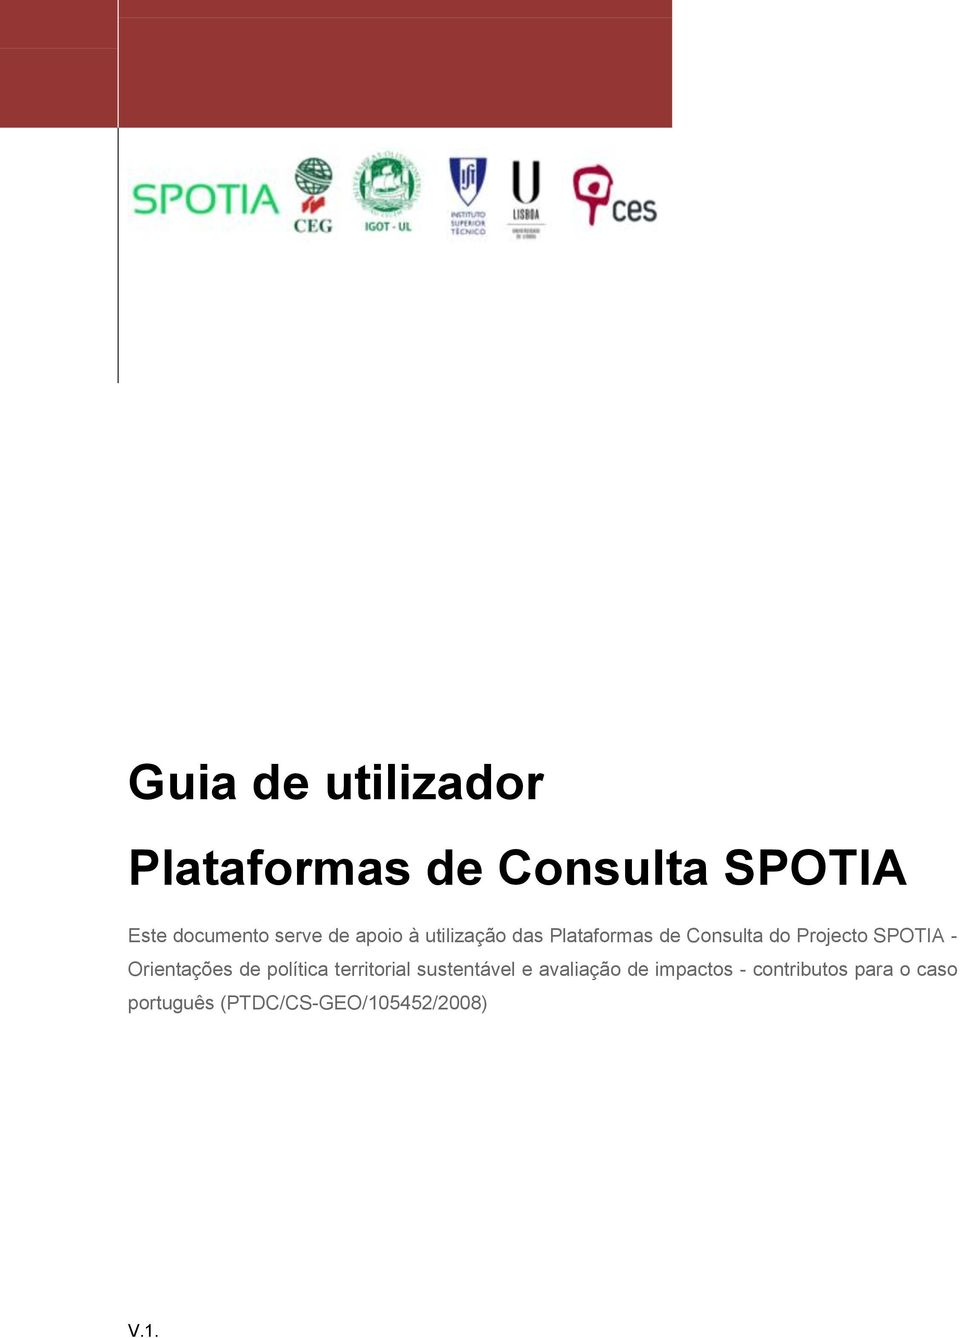 Consulta do Projecto SPOTIA - Orientações de política